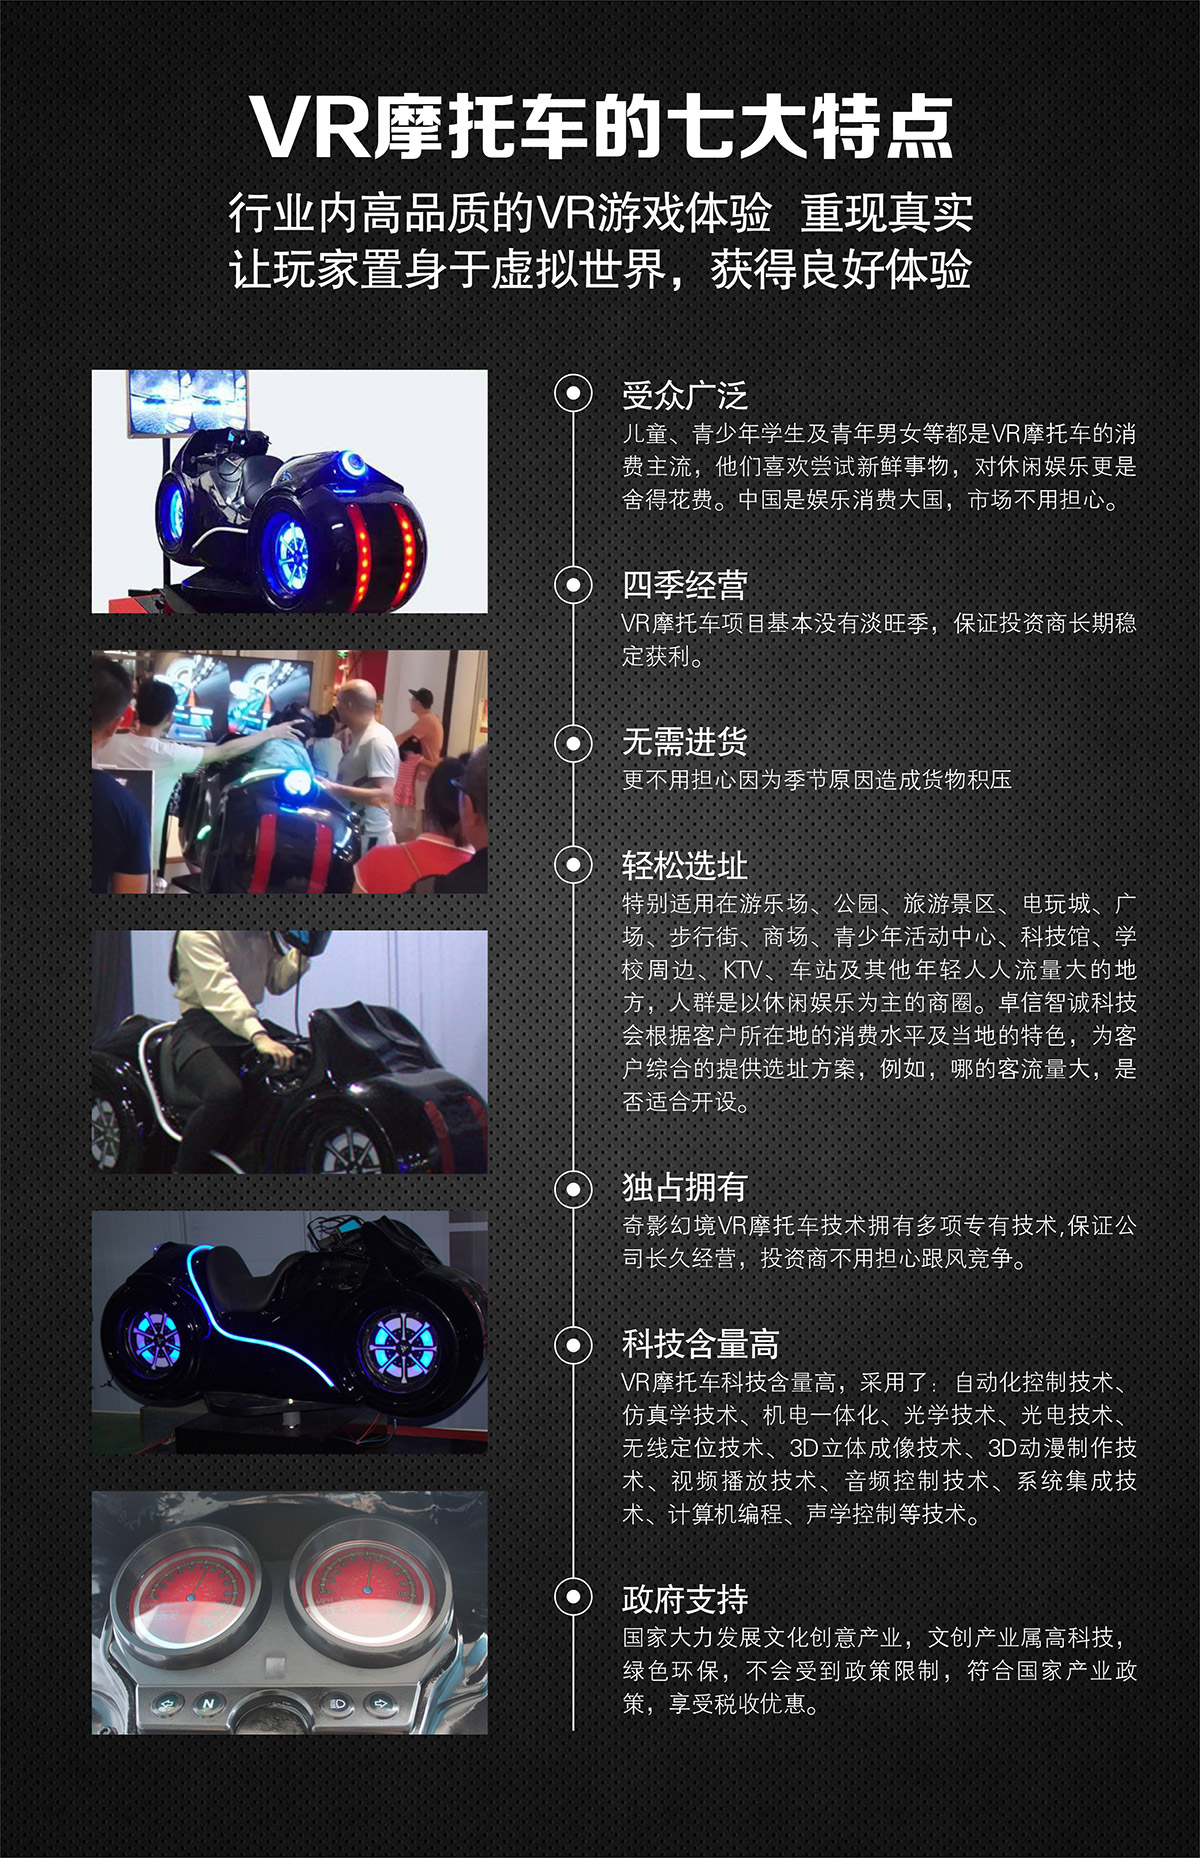 环幕影院VR摩托车特点高品质游戏体验.jpg